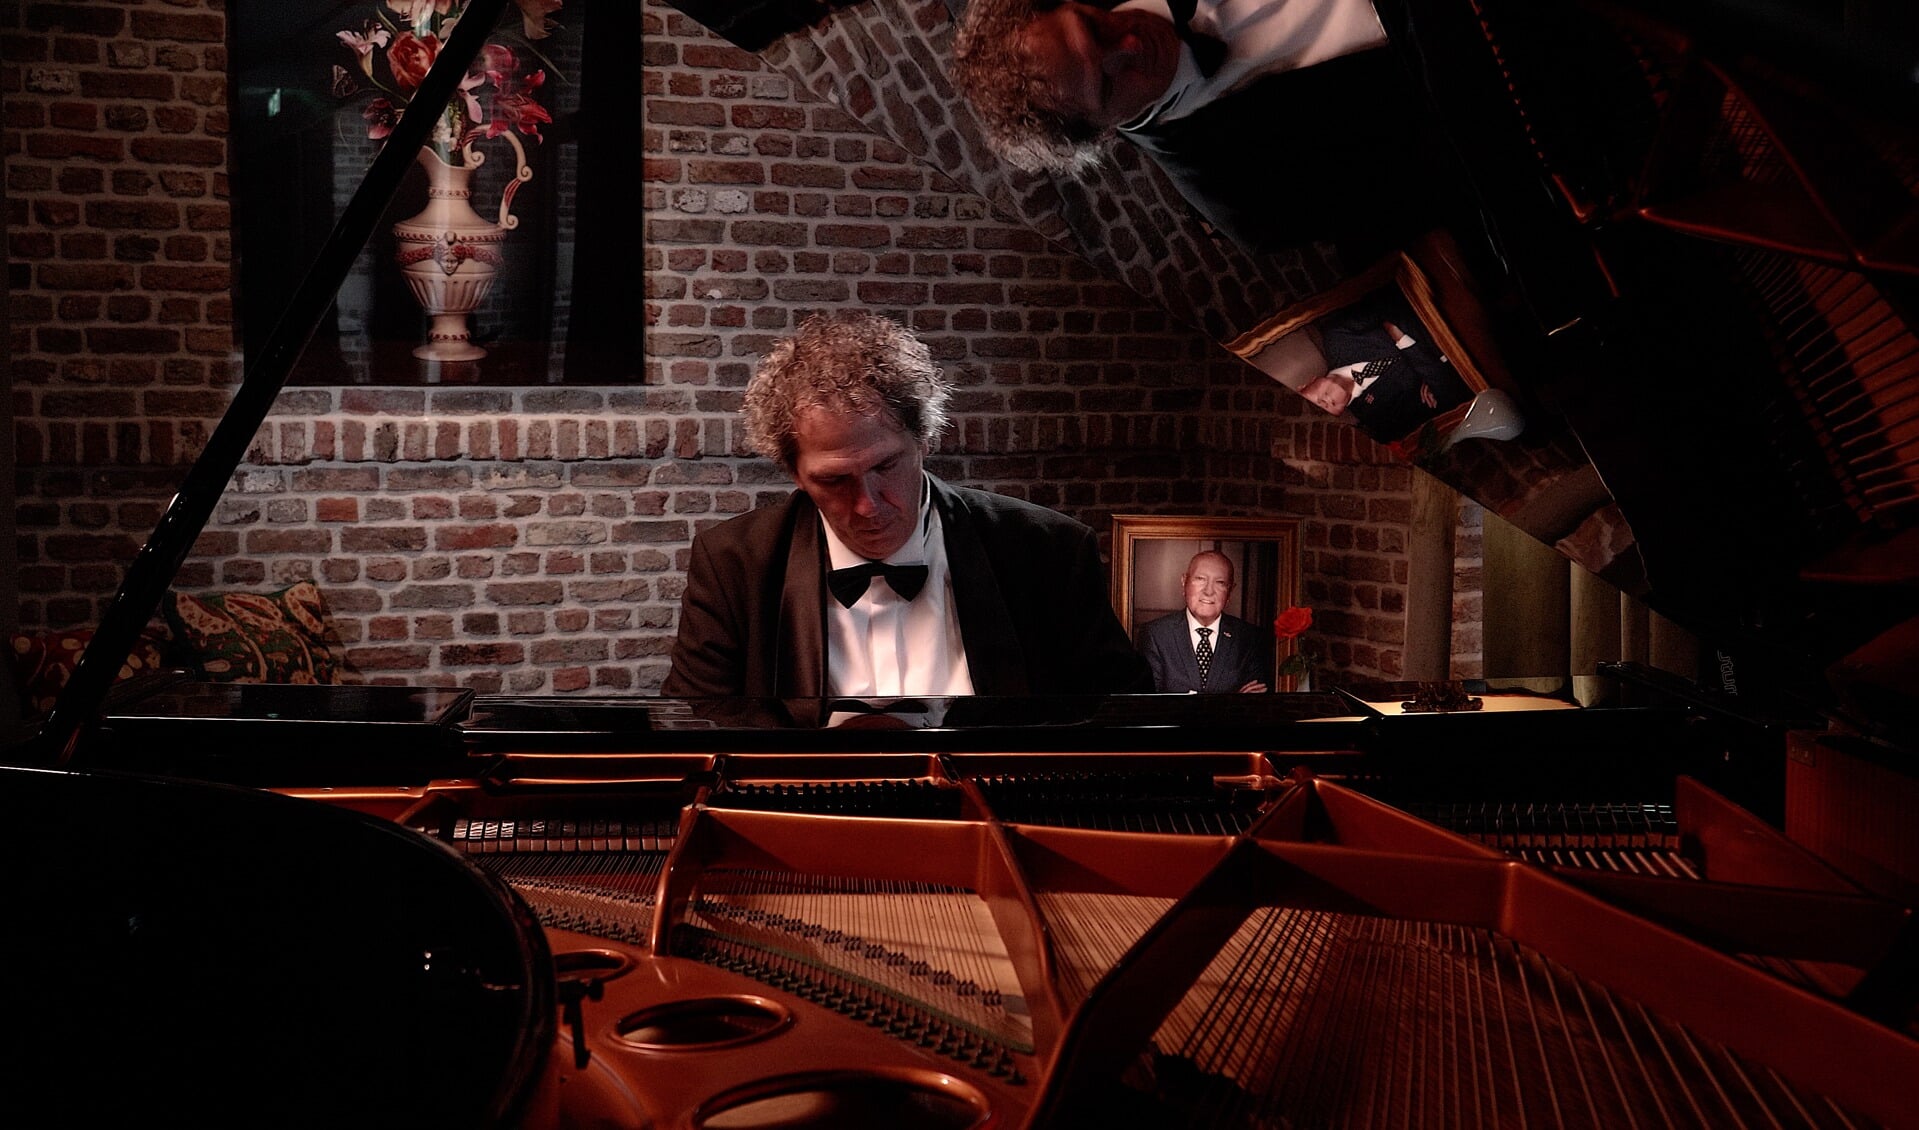 Dan Loredan tijdens het inspelen van het themanummer op de piano in The Duke. Op de achtergrond staat een portret van Karel van Eerd.